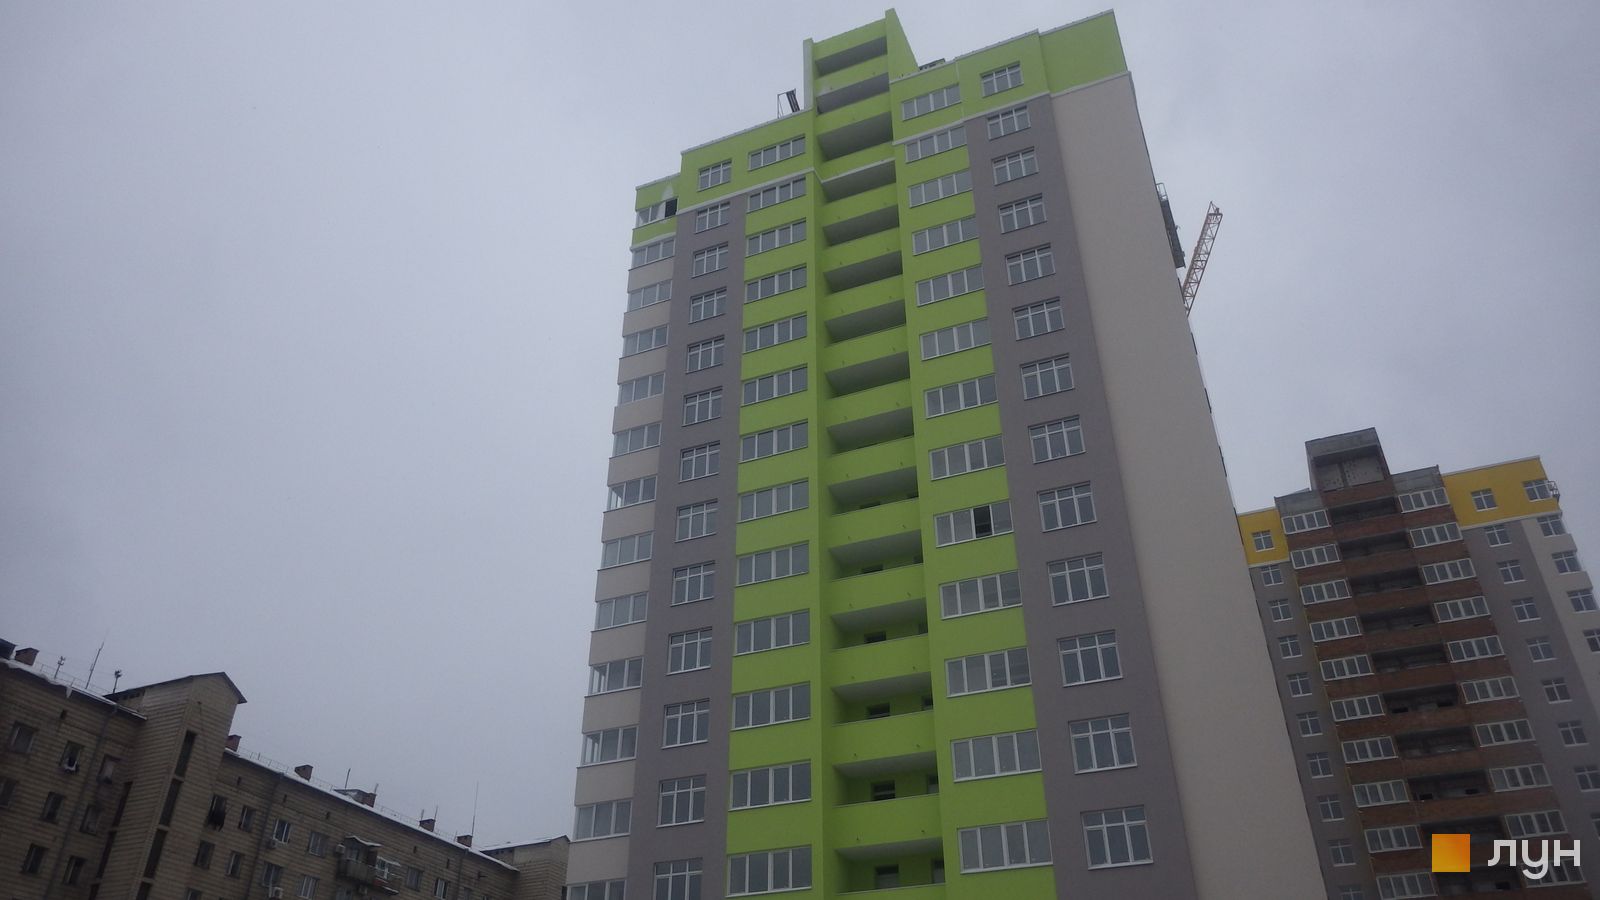 Моніторинг будівництва ЖК Відрадний - Ракурс 6, грудень 2018